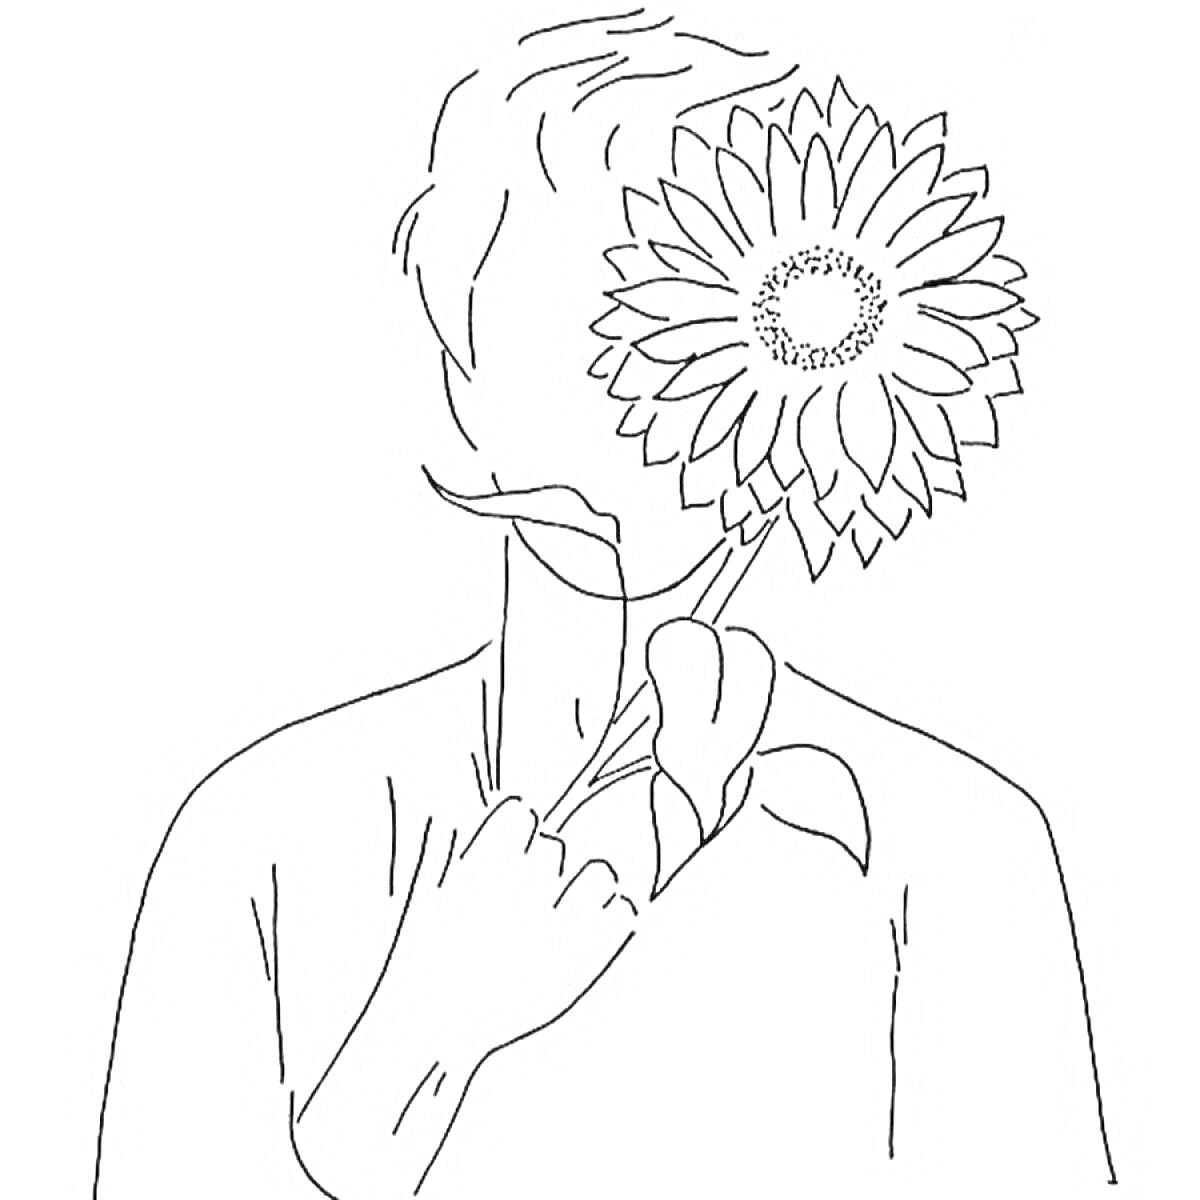 Человек с подсолнухом вместо лица держит цветок